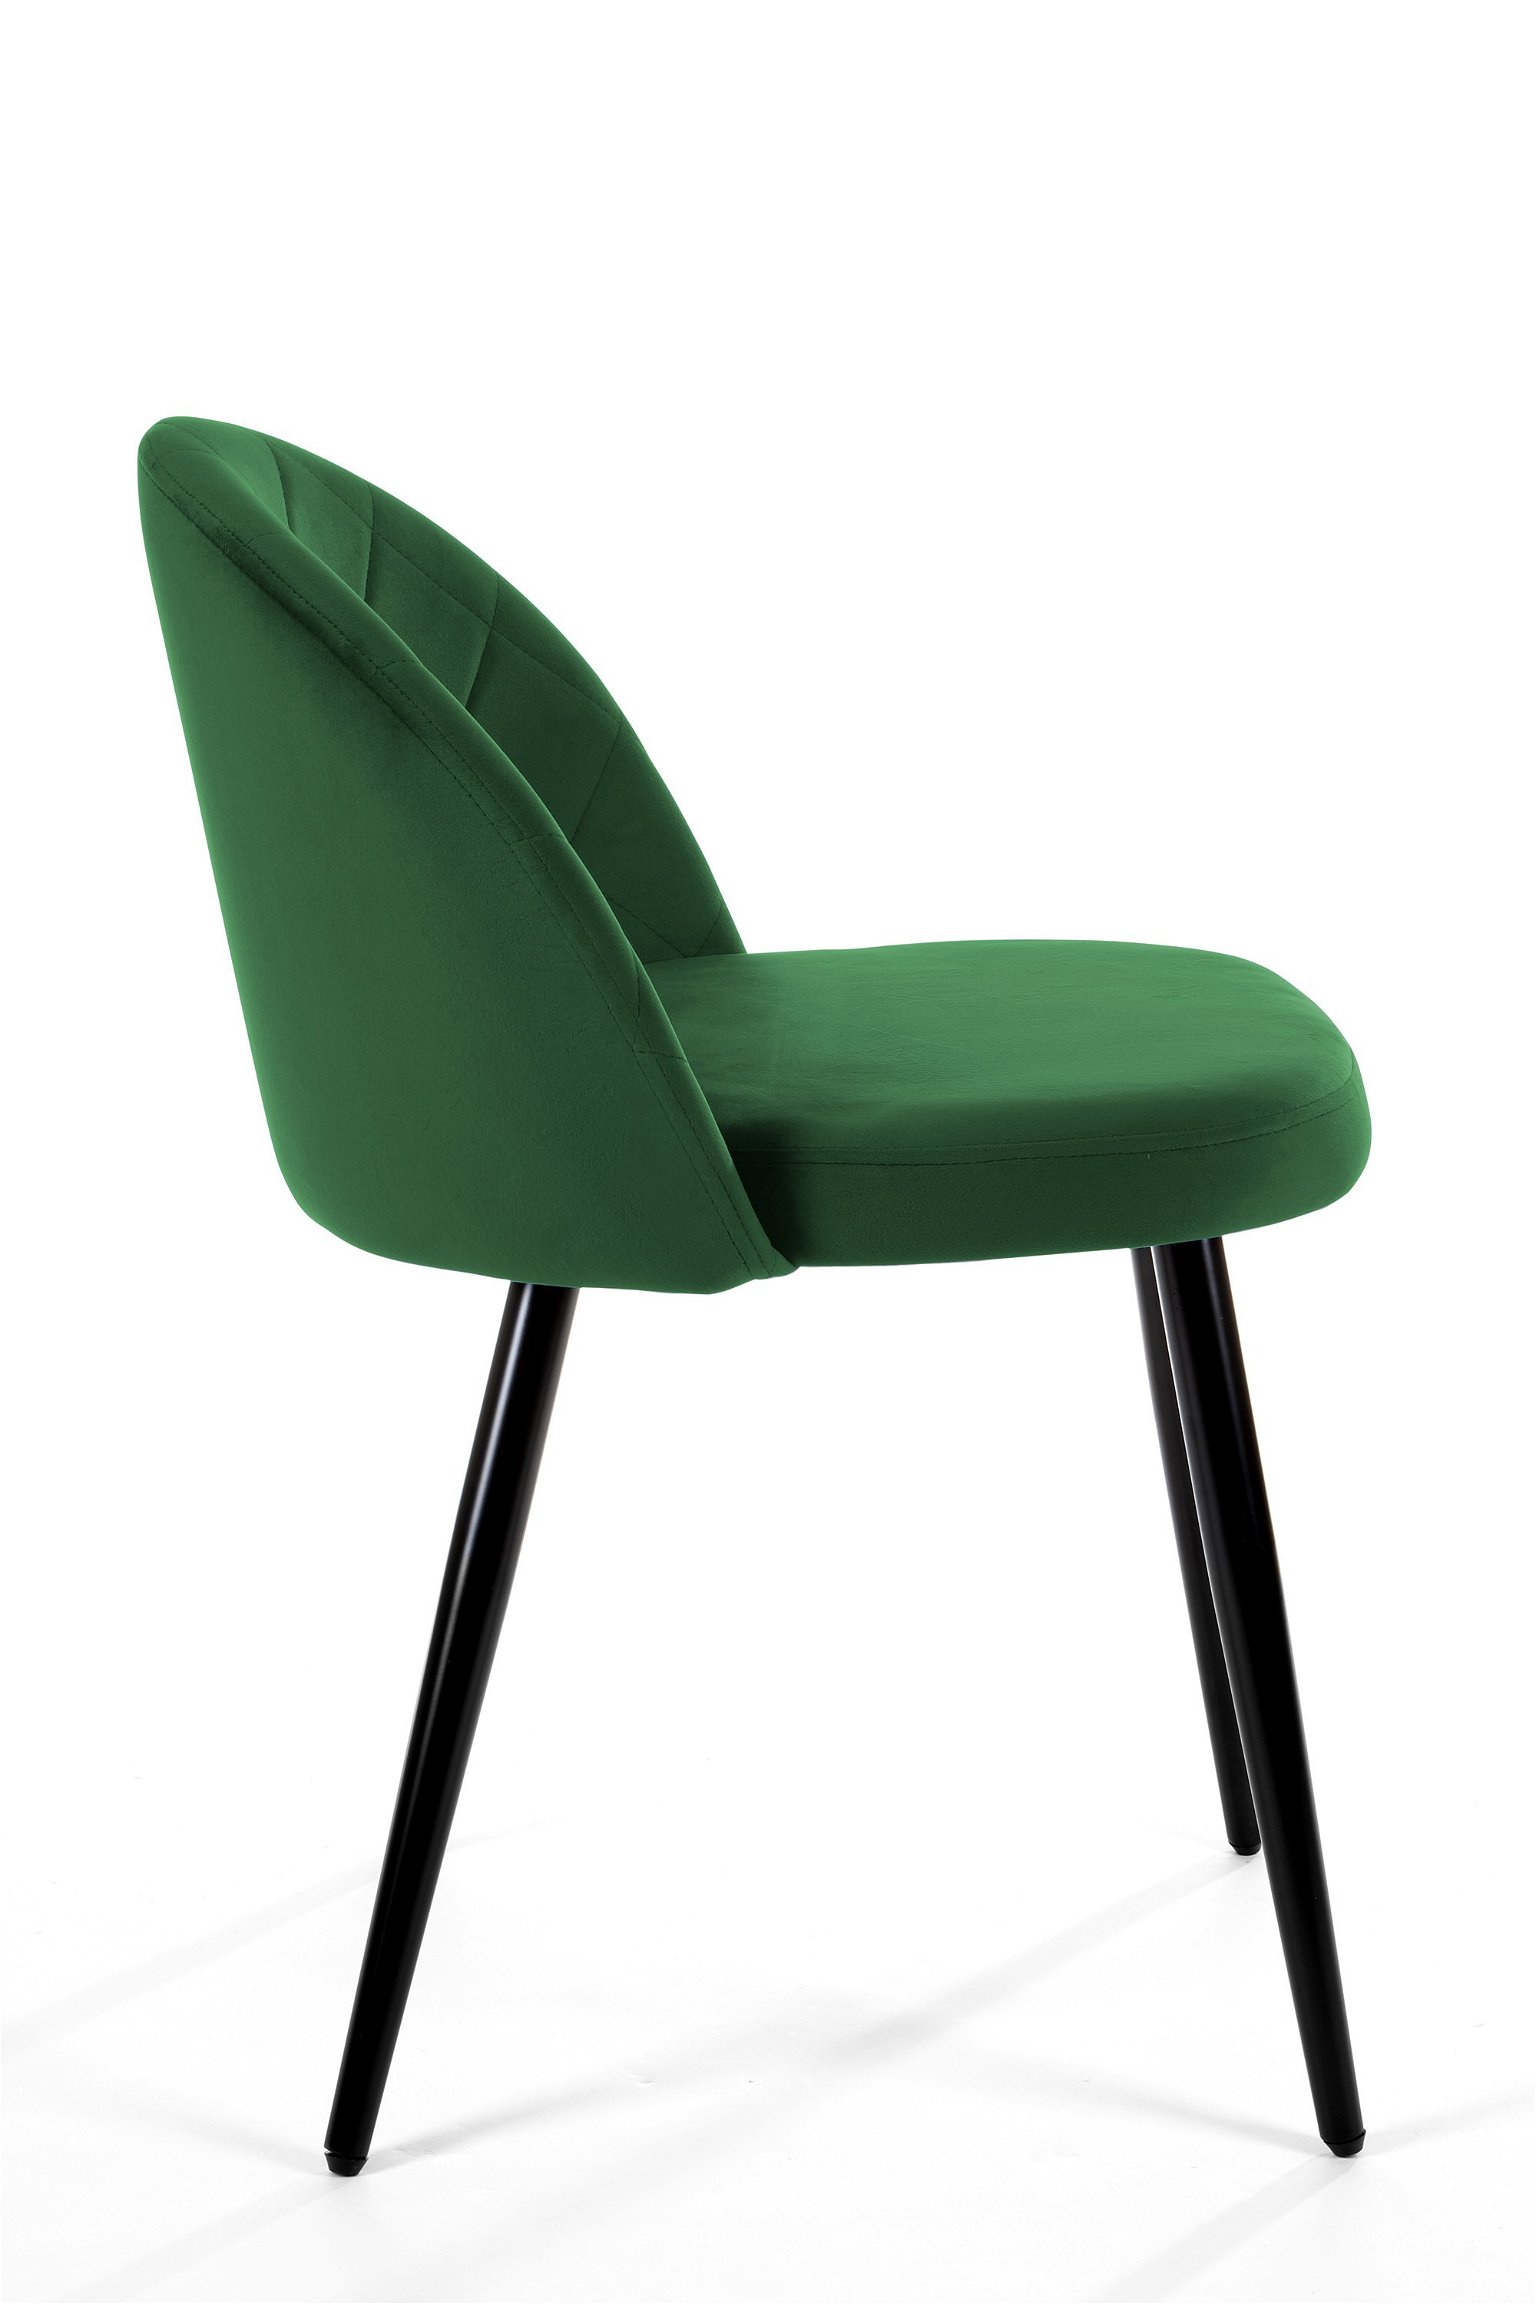 4-ių kėdžių komplektas SJ.077, žalia - 4